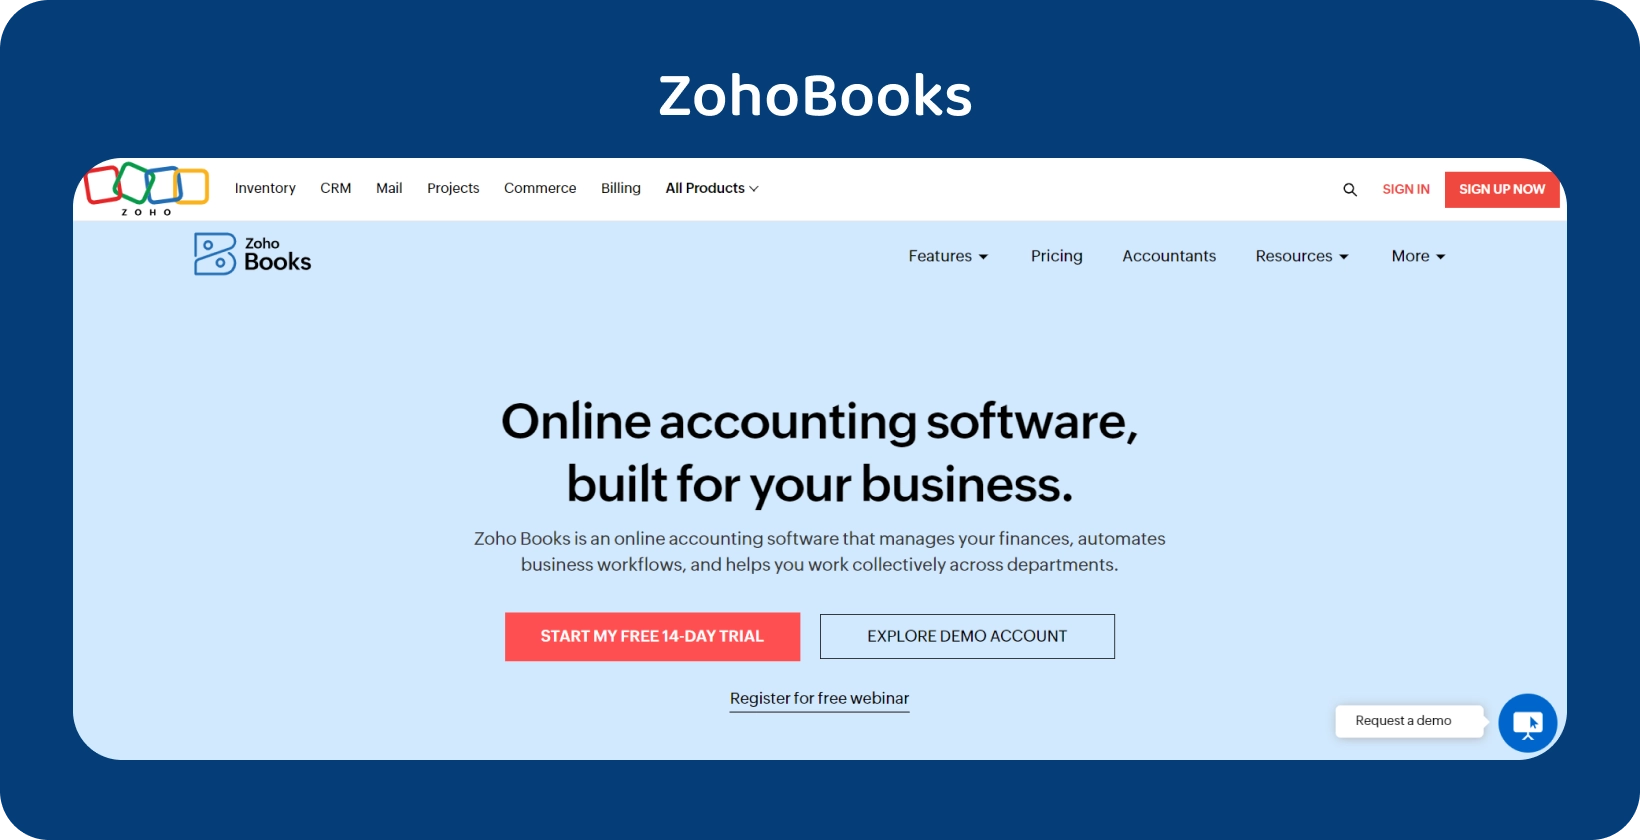 Zoho Books kezdőlap banner kiemeli az üzleti személyre szabott online számviteli szoftverét az egyszerűsített műveletek érdekében